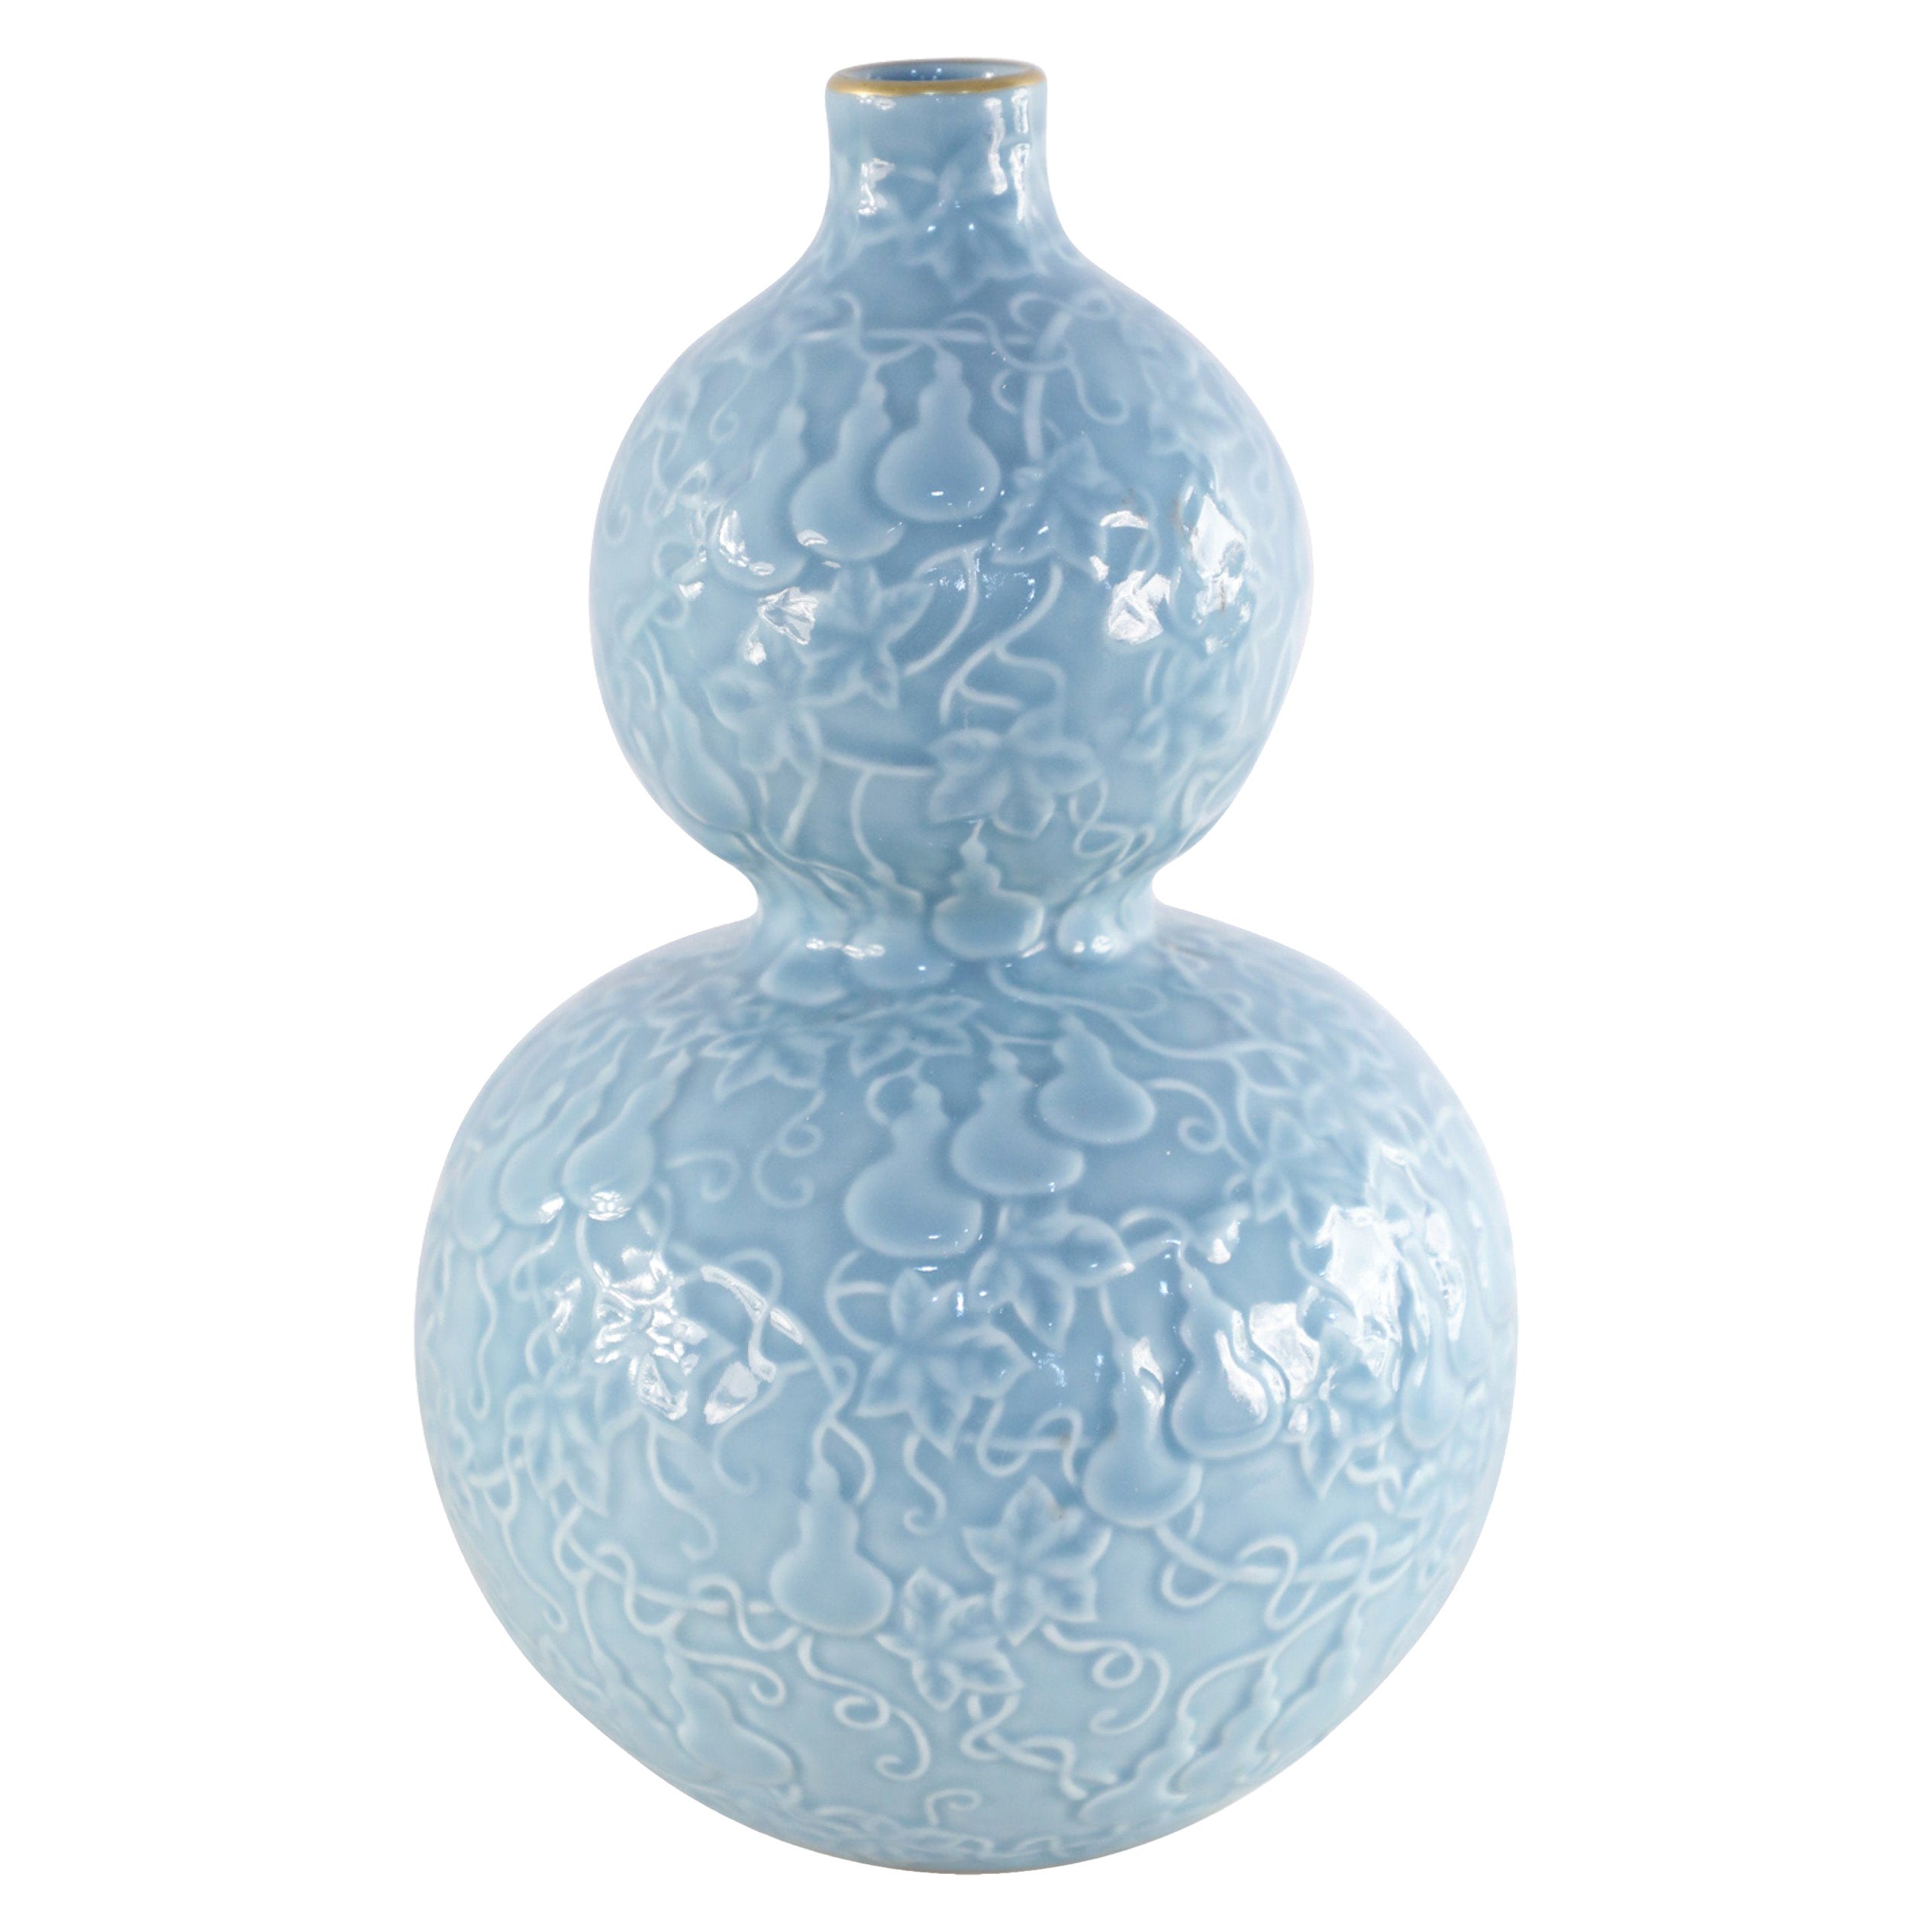 Vase en porcelaine à double gourde bleue de style dynastie chinoise Qing avec bordure dorée